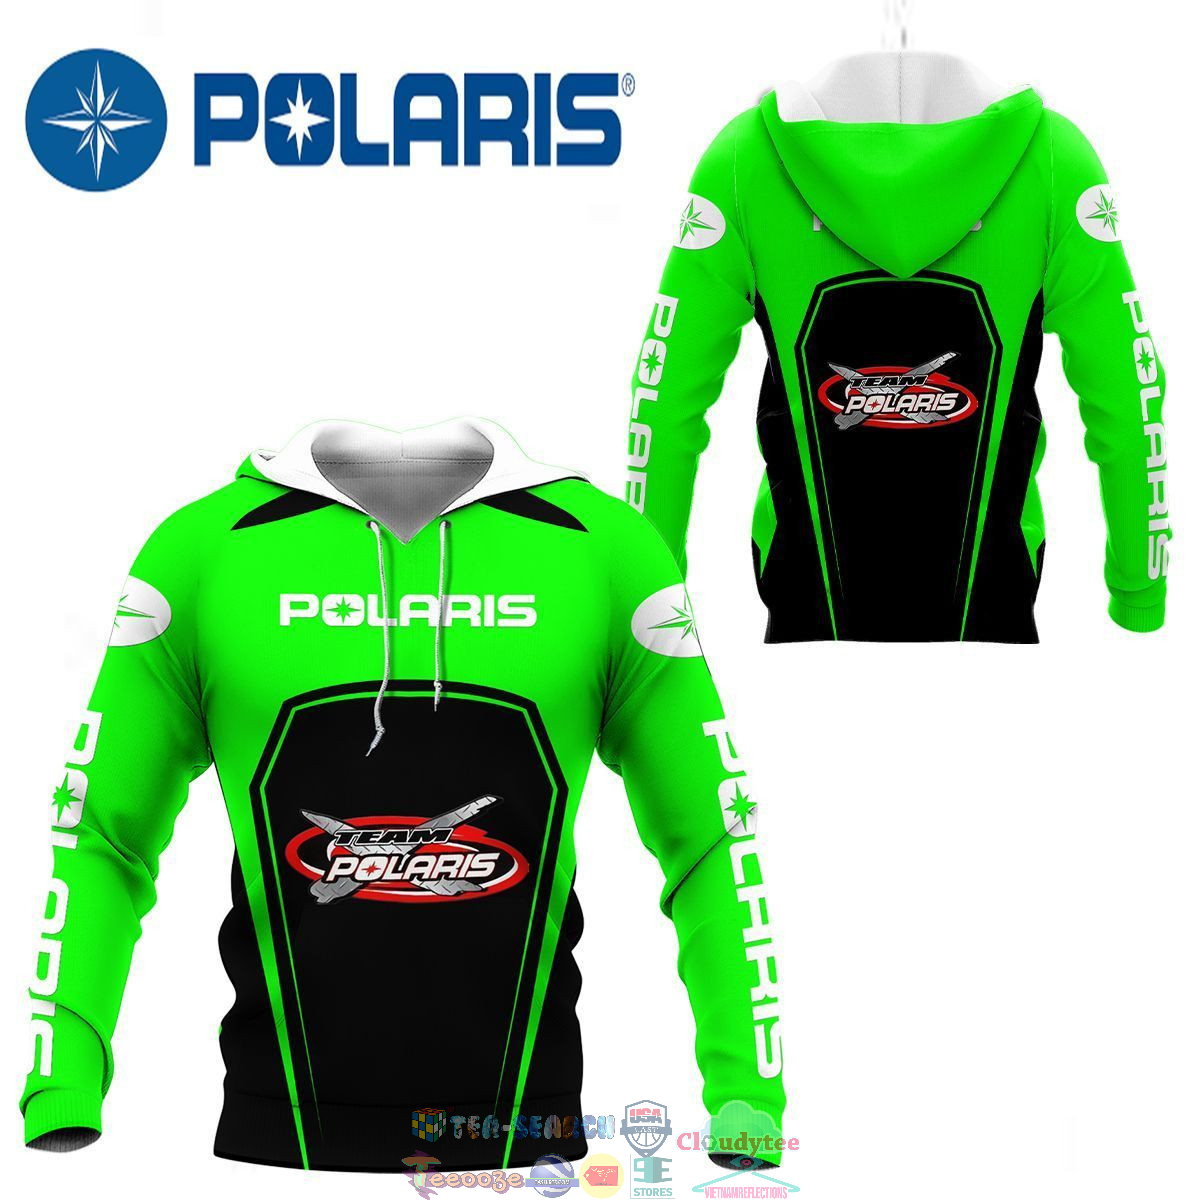 Polaris Racing Team ver 12 3D hoodie and t-shirt